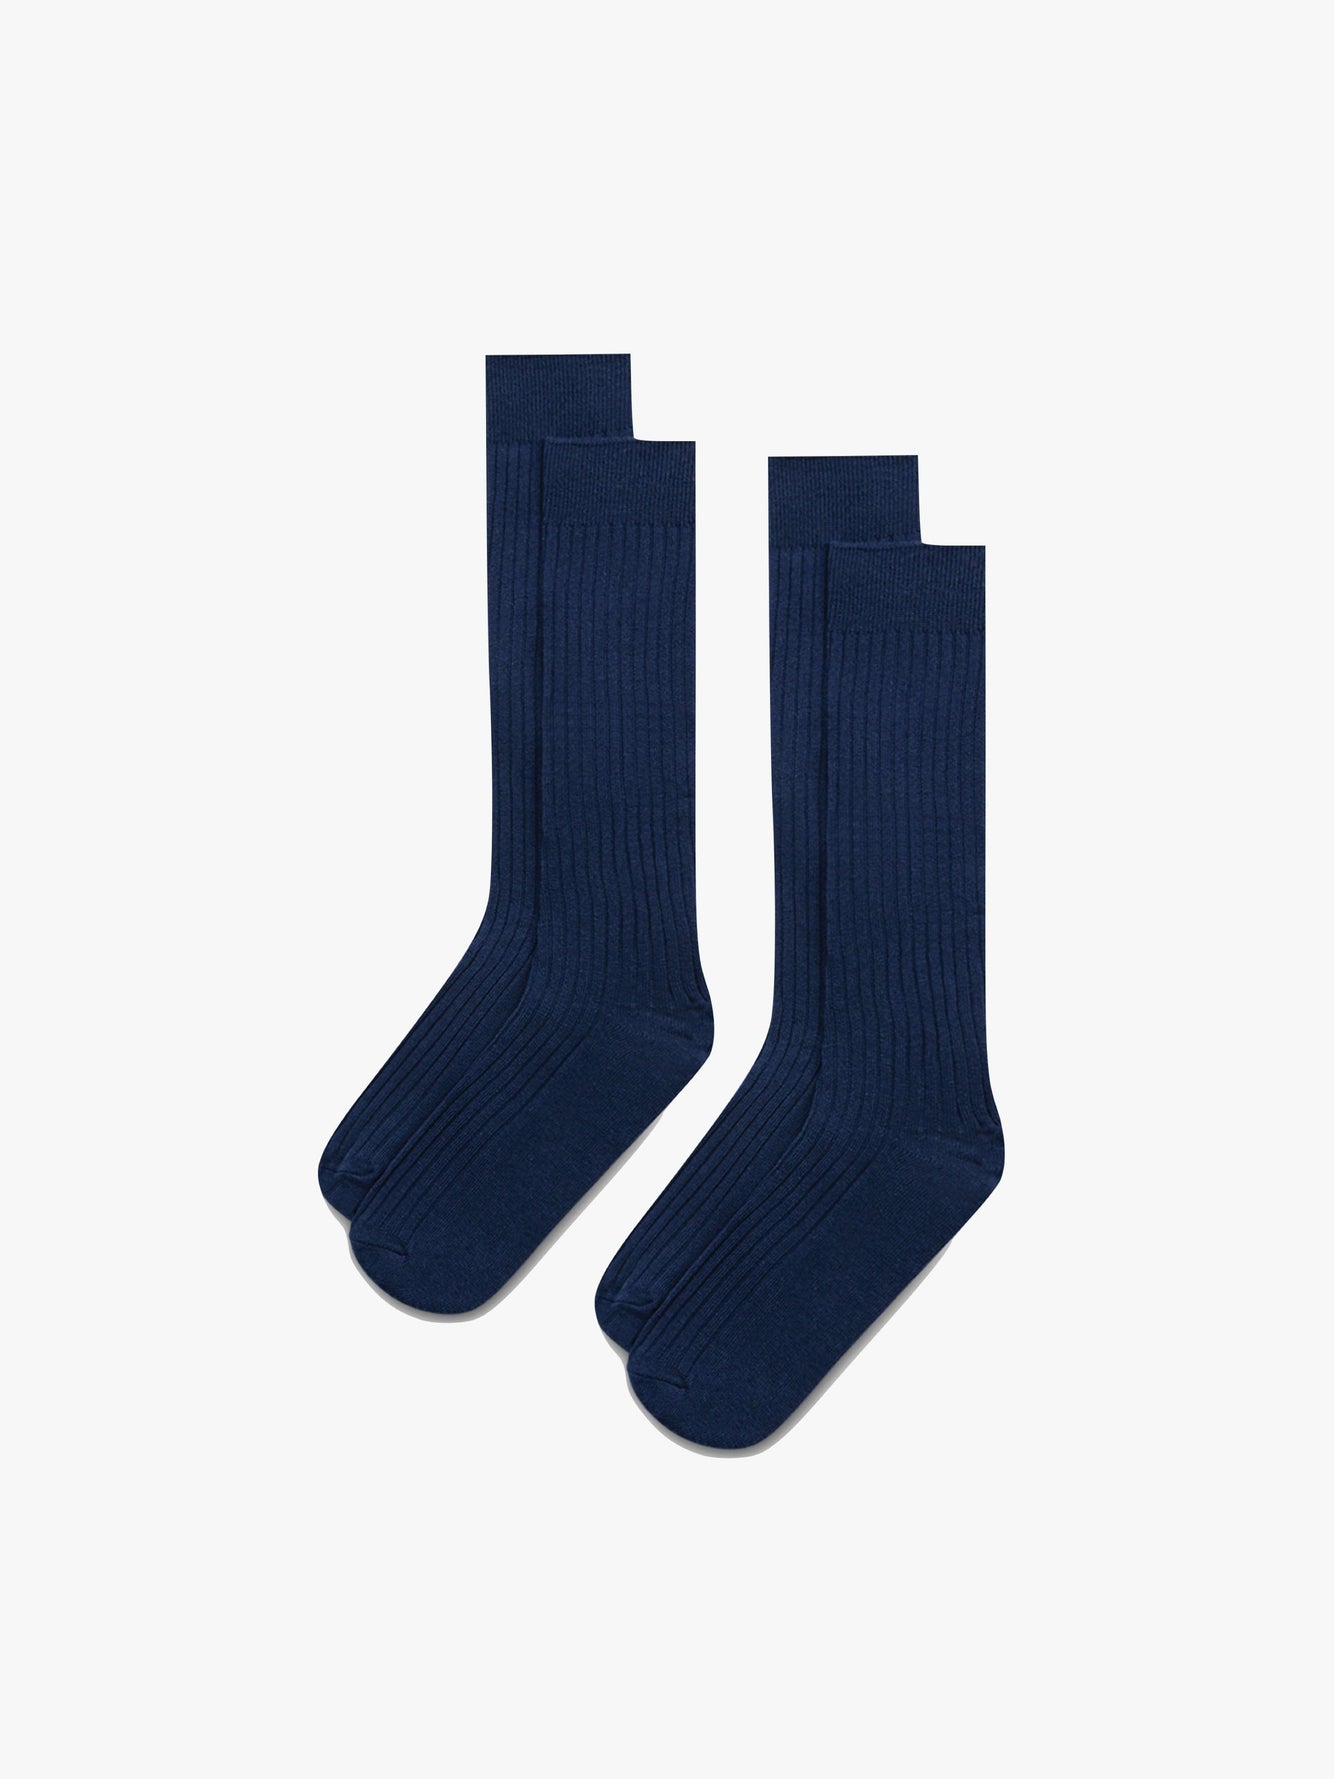 Pima Grand Mar - Navy Socks Cotton Le Ribbed